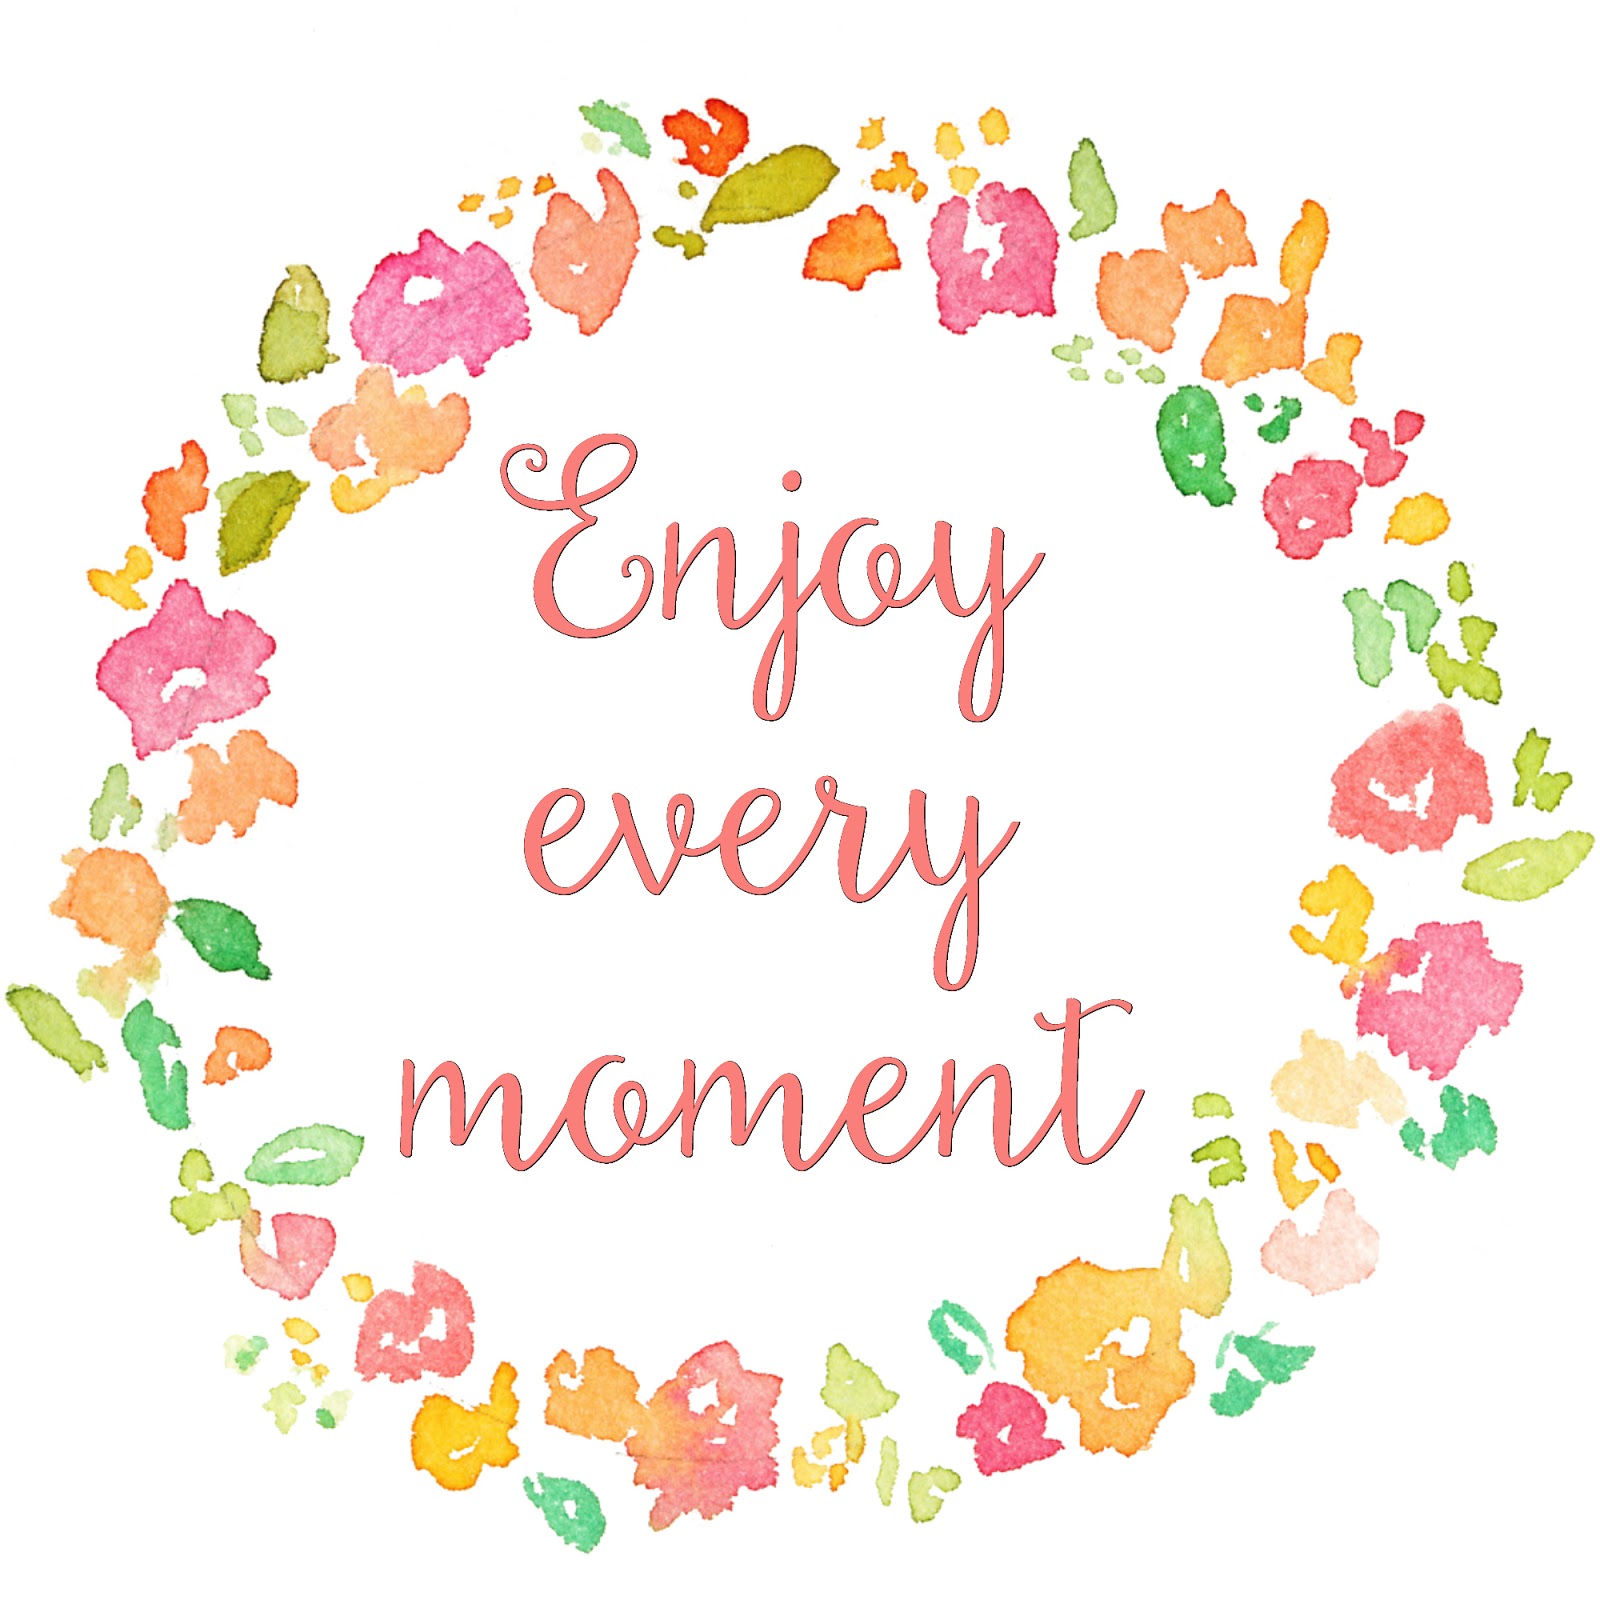 Do I really need to 'enjoy every moment'?